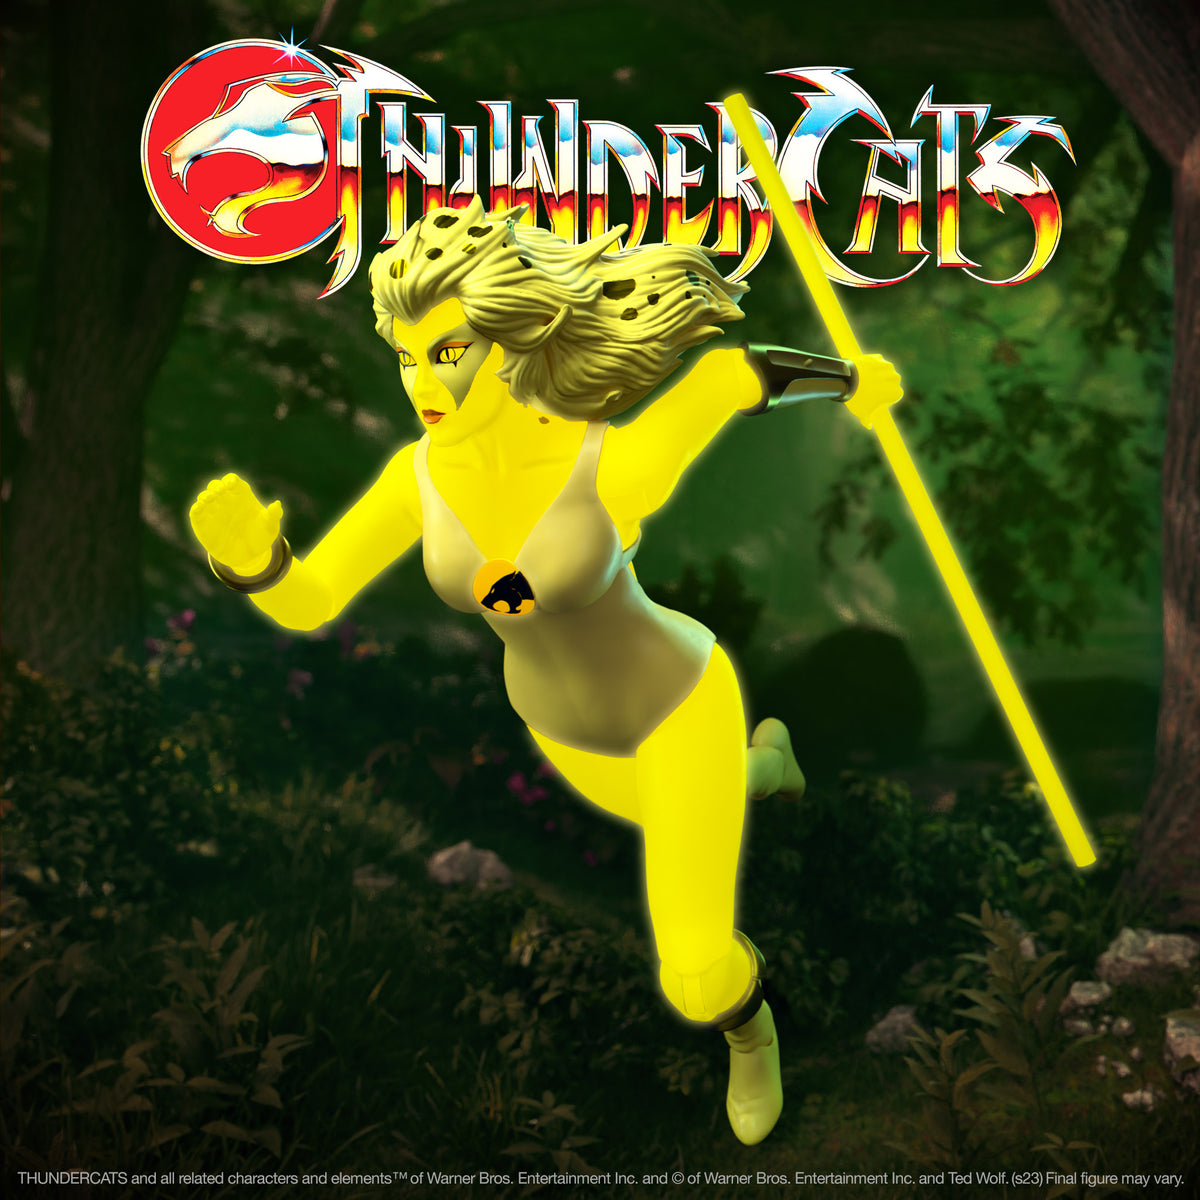 Thundercats Photo: Cheetara  Thundercats, Thundercats characters, Cartoon